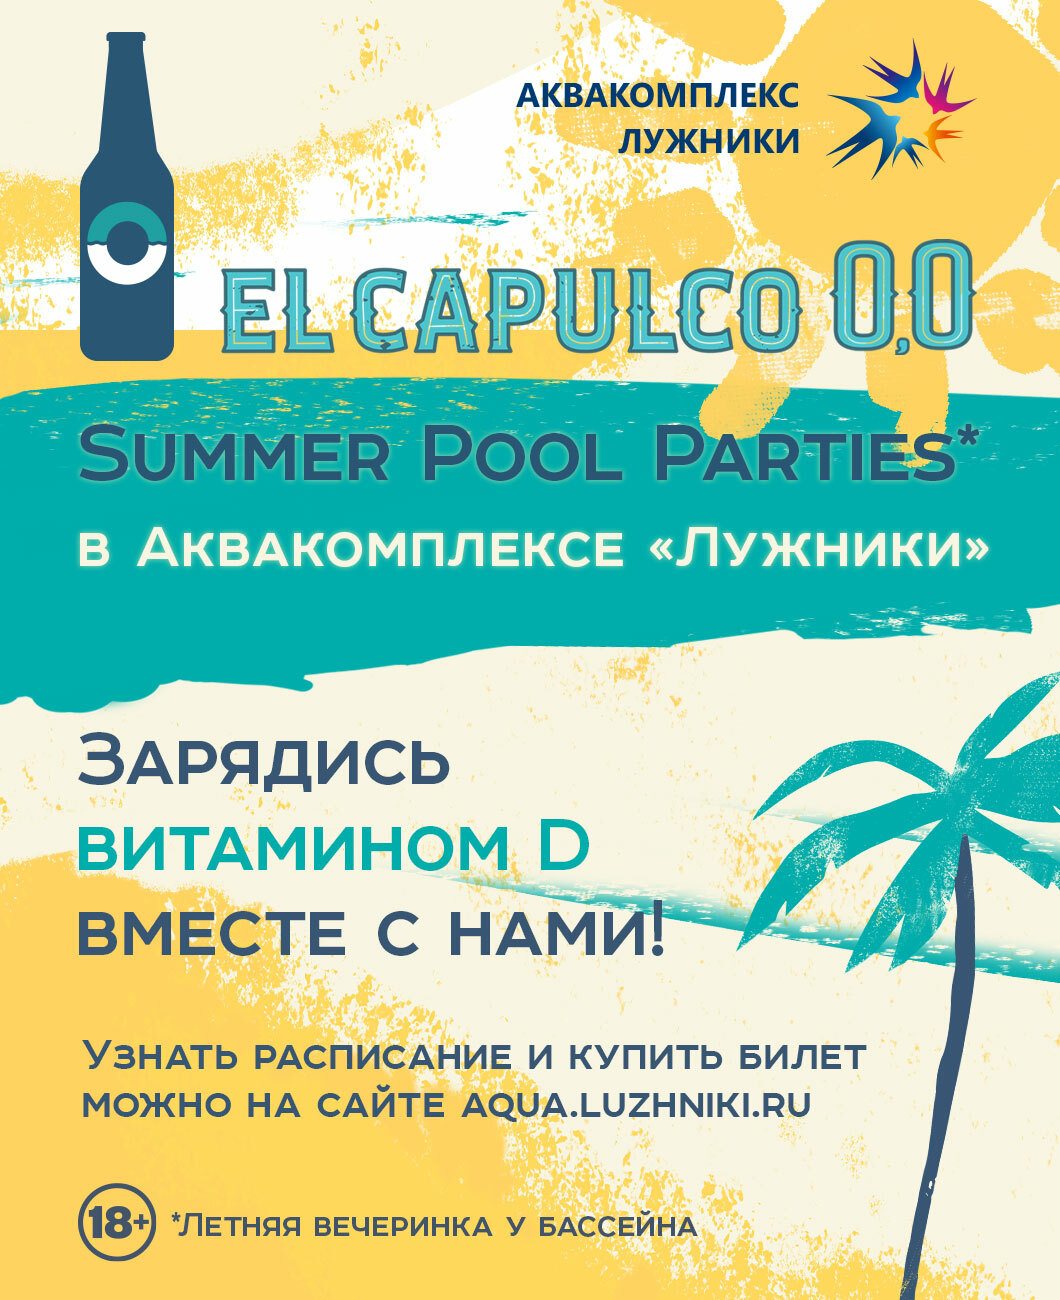 El Capulco 0,0 Summer Pool Parties: скоро в Лужниках